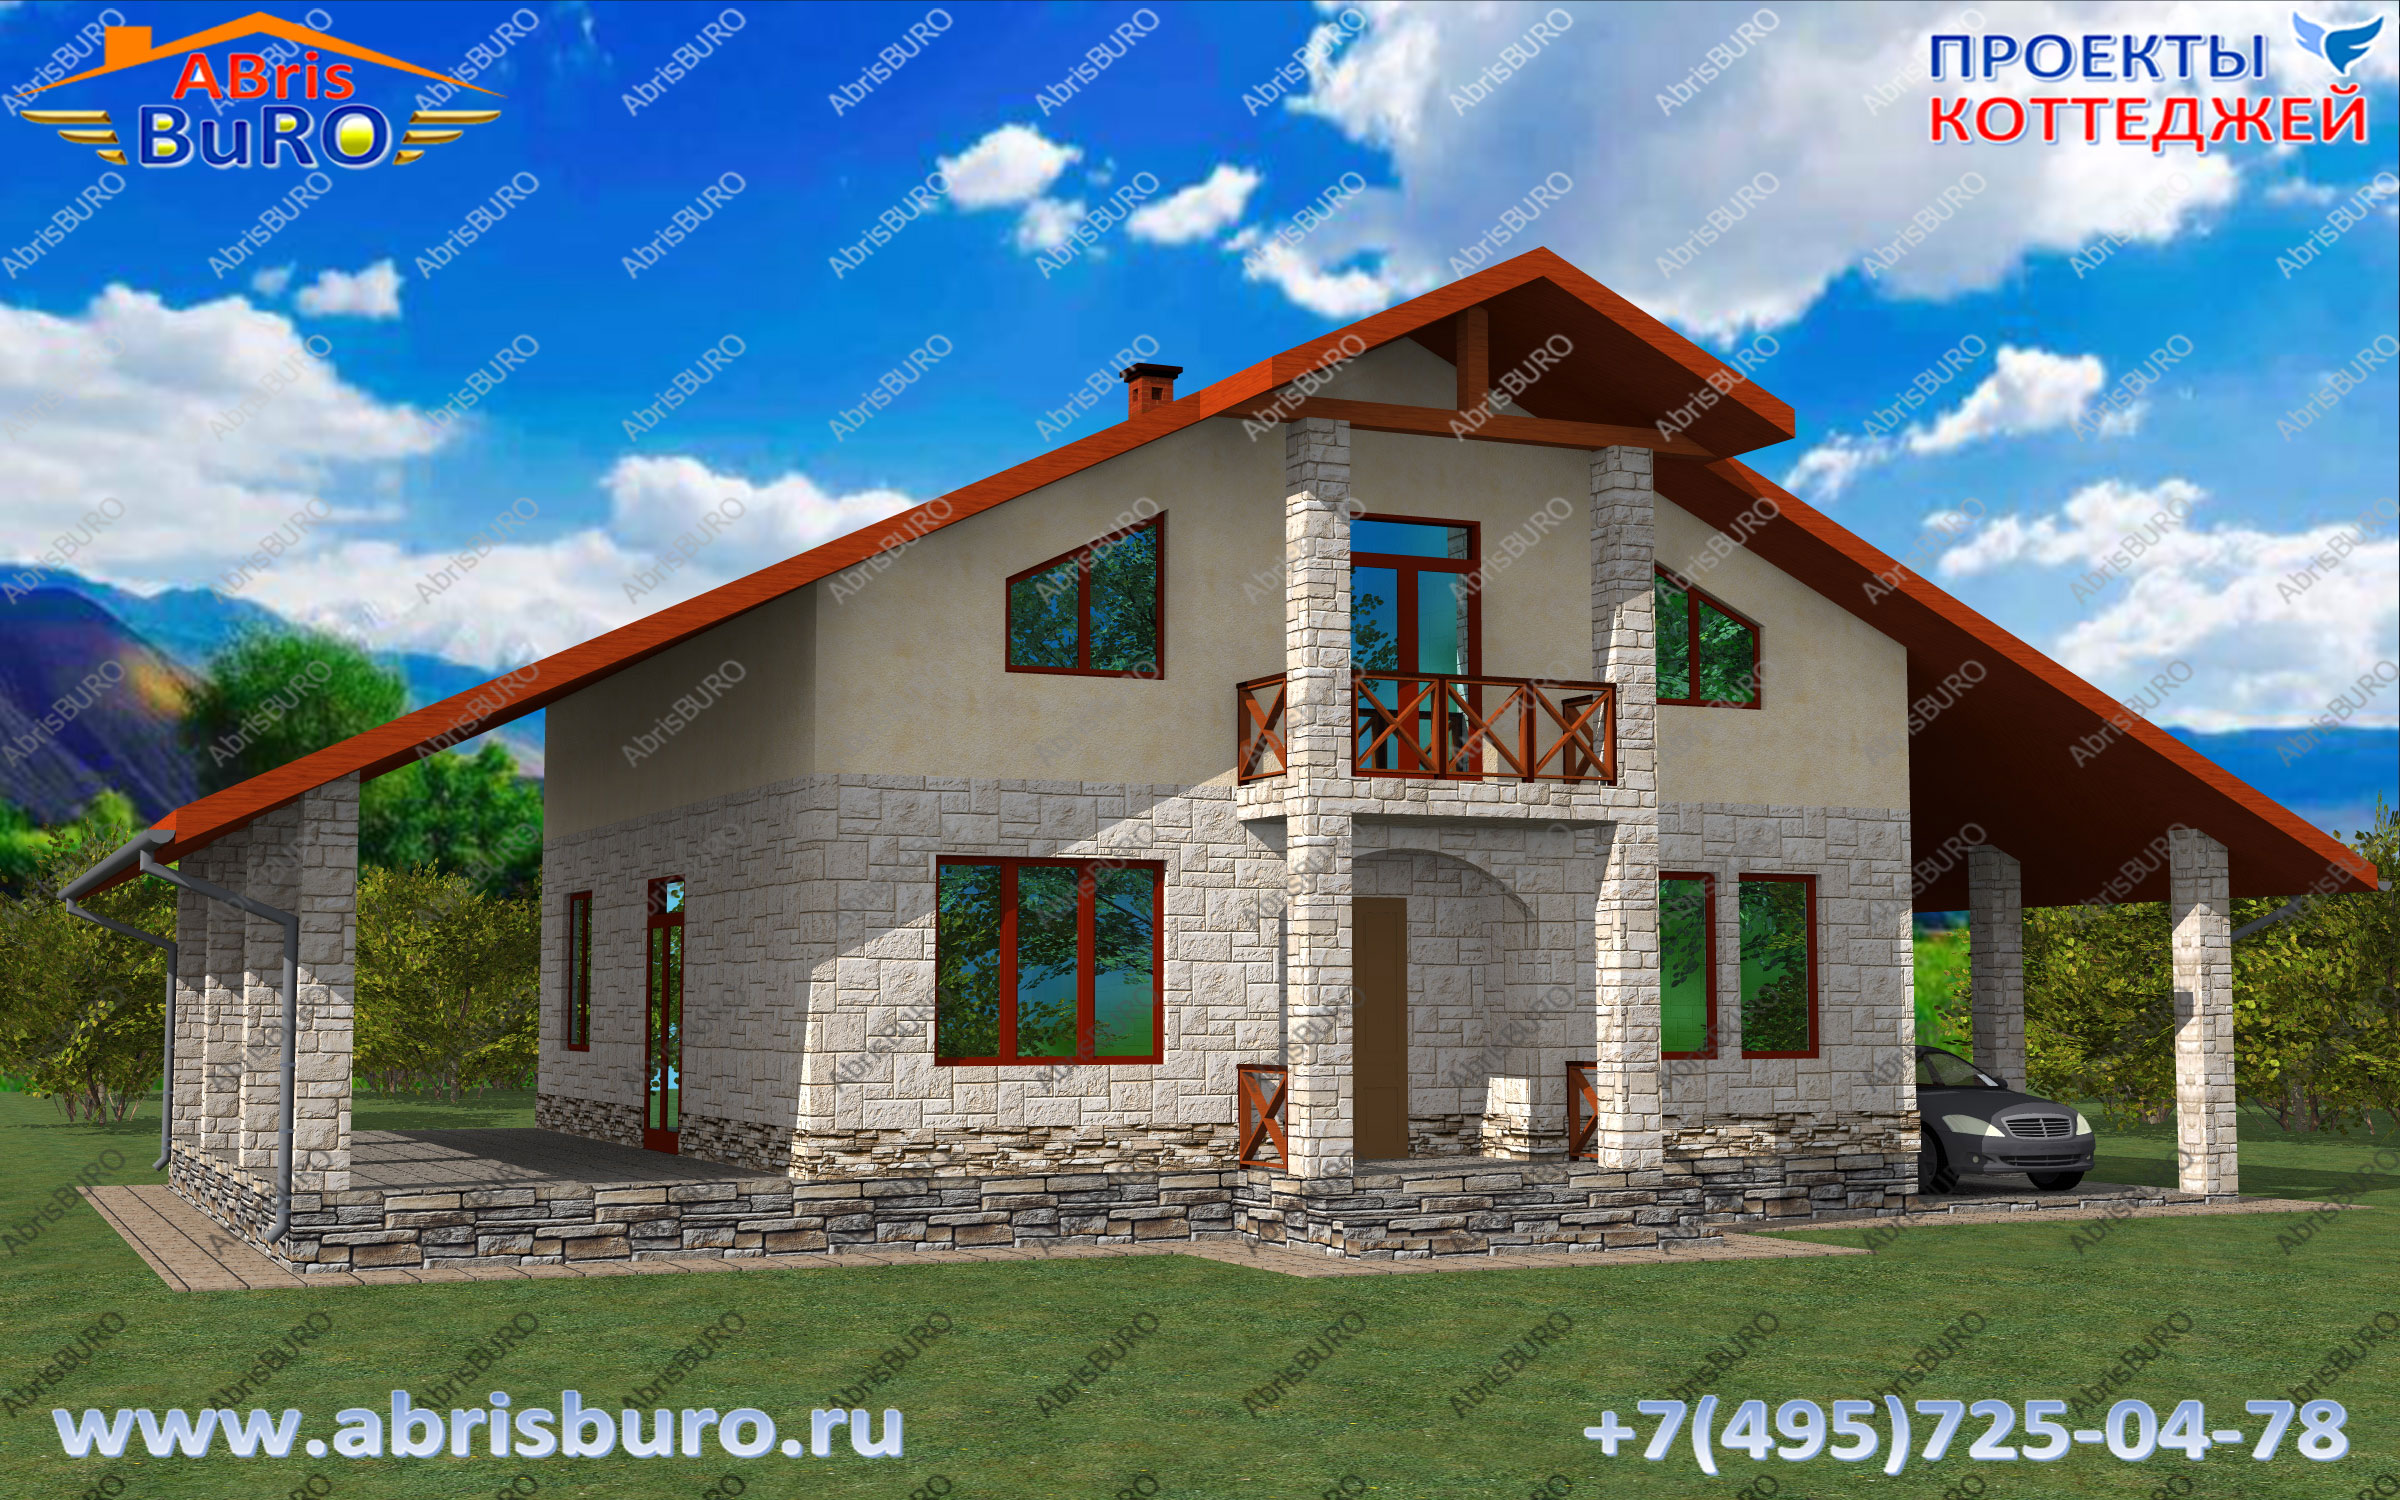 K2130-220 Дом с мансардой, балконом и террасой на сайте www.abrisburo.ru